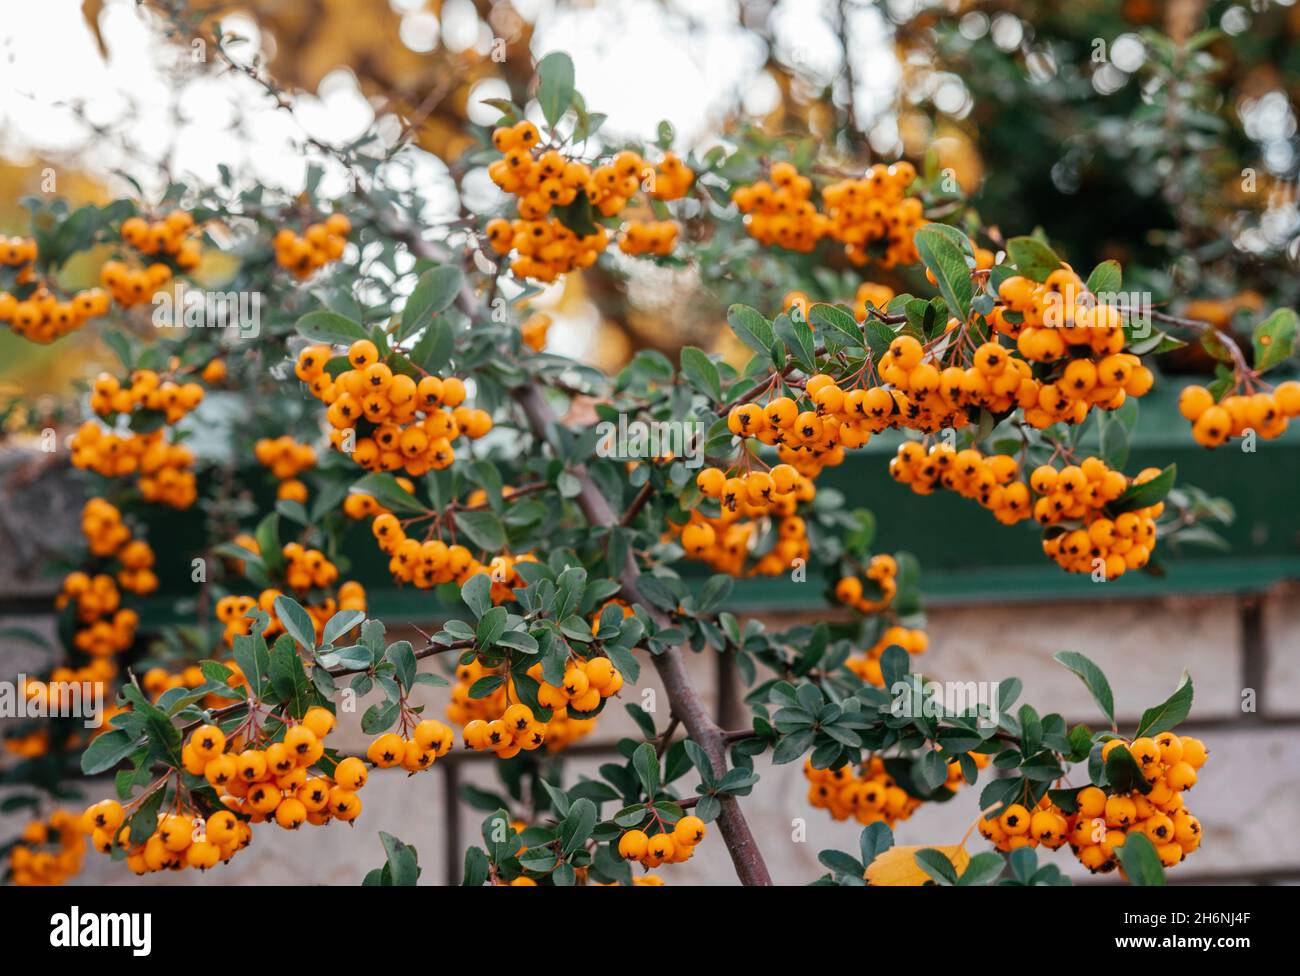 Beautiful orange berries of Piracantha firethorn in autumn garden Stock Photo